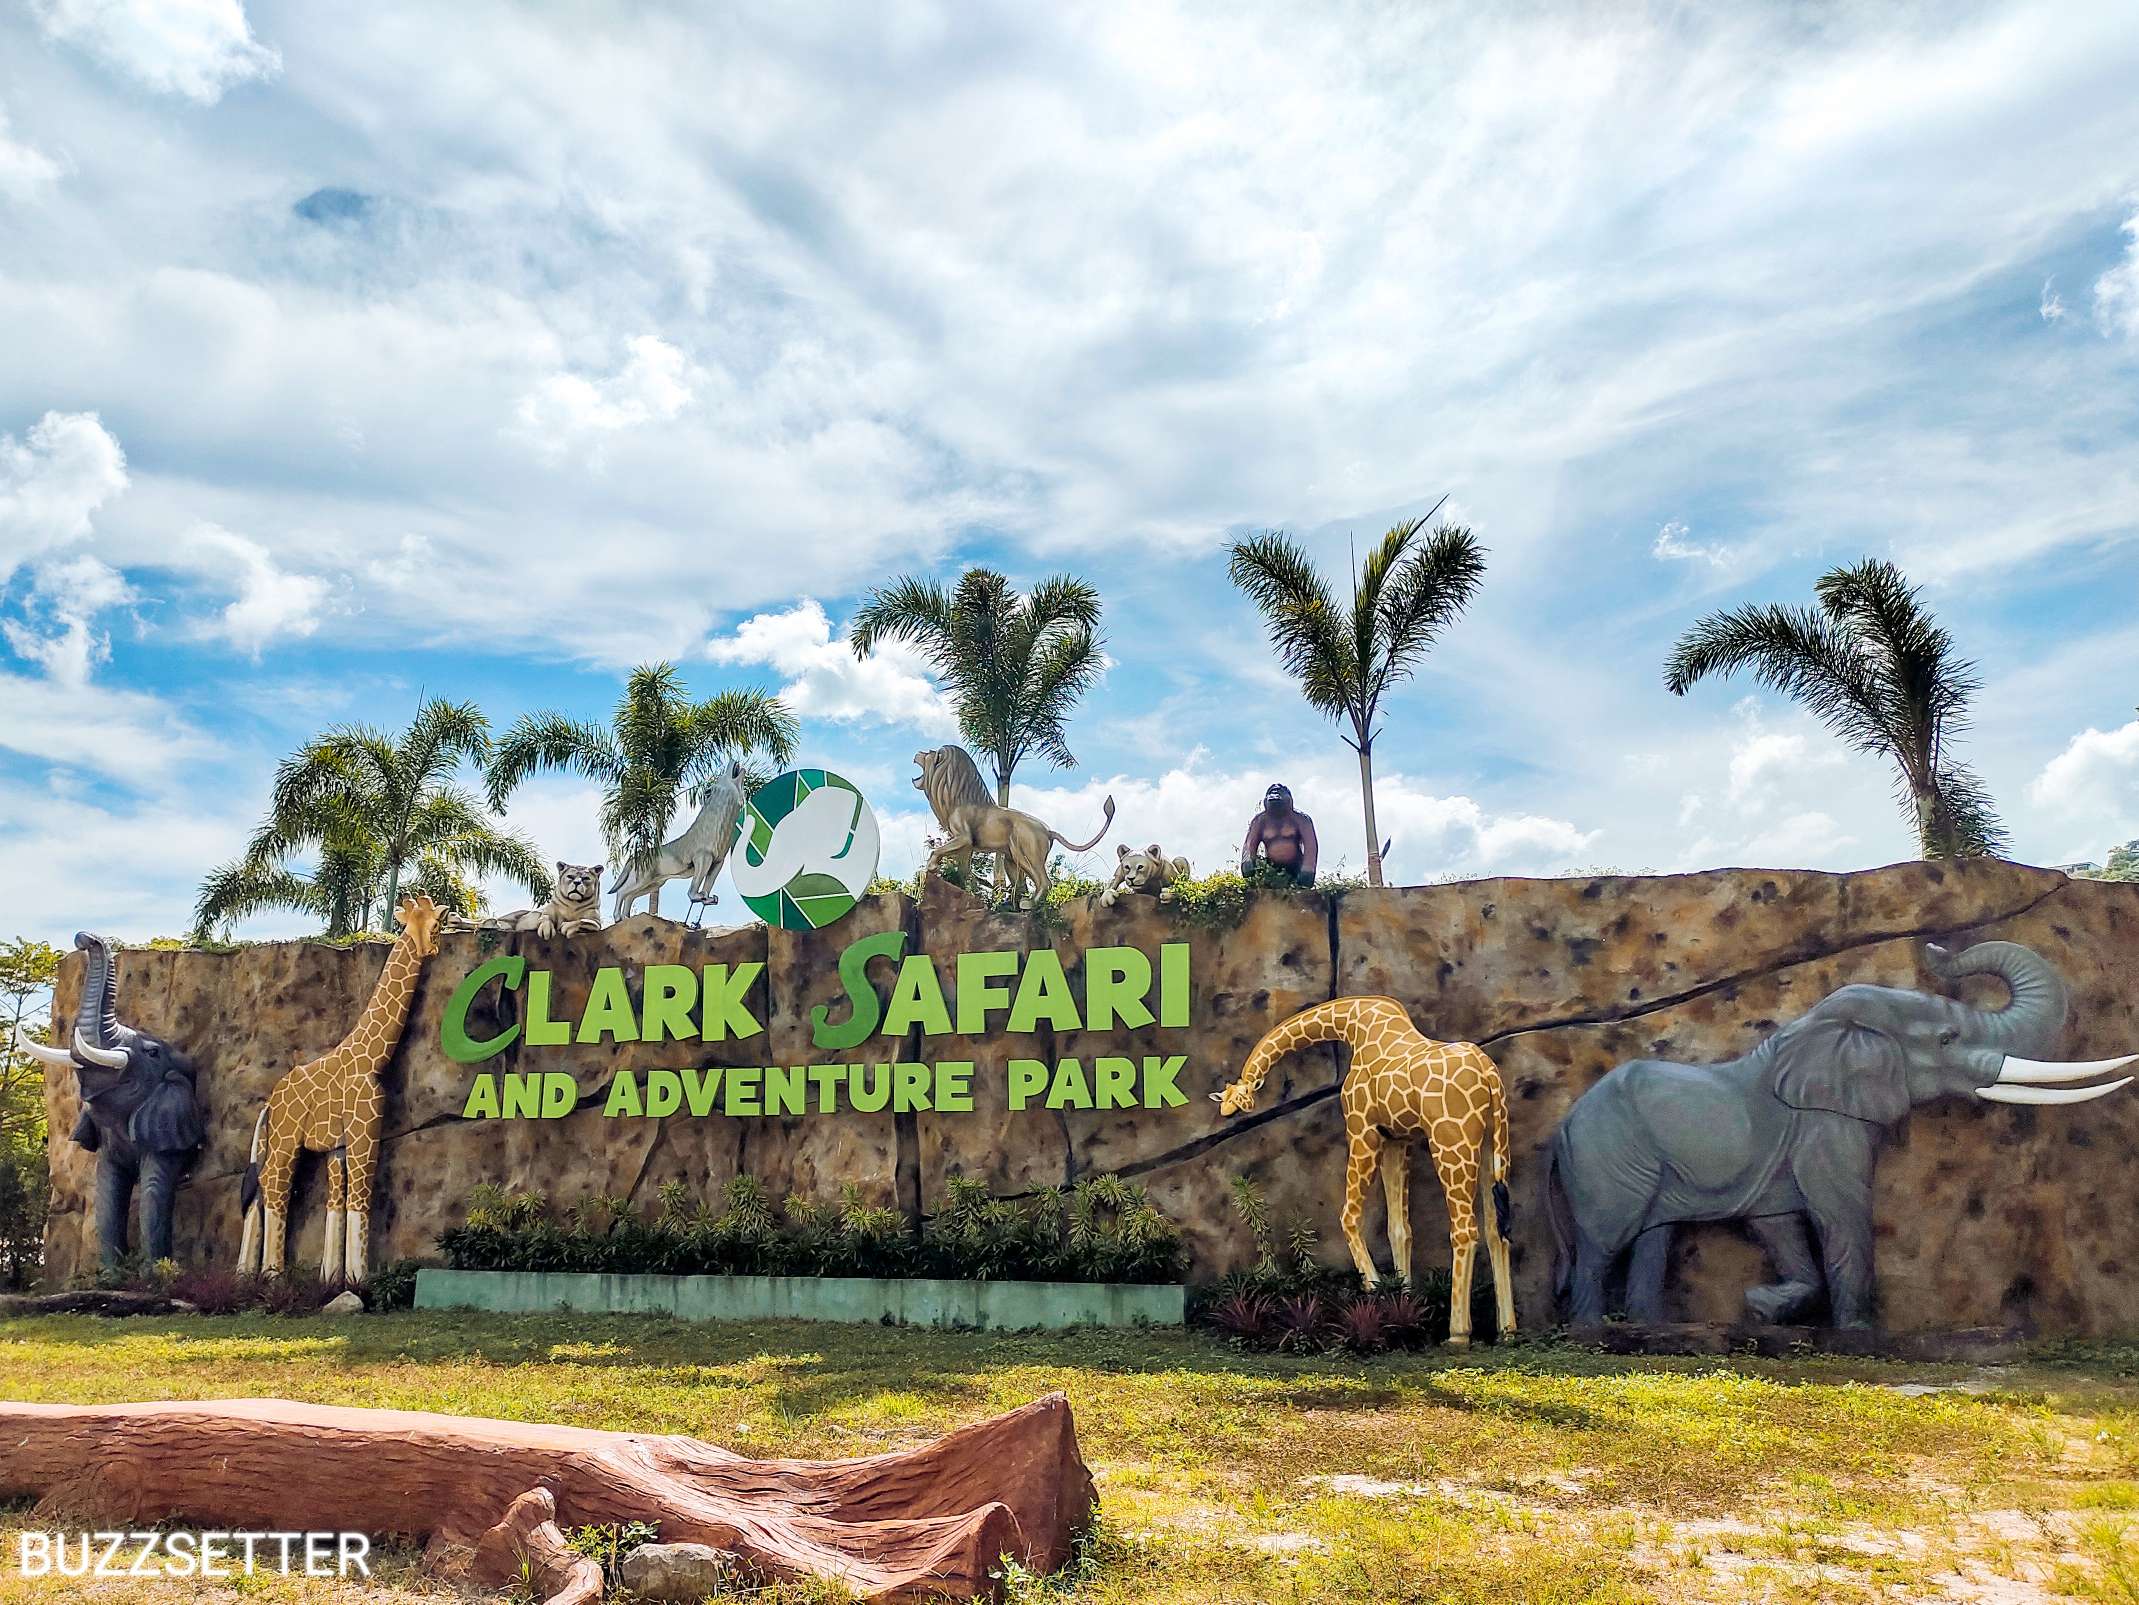 safari adventure park prices